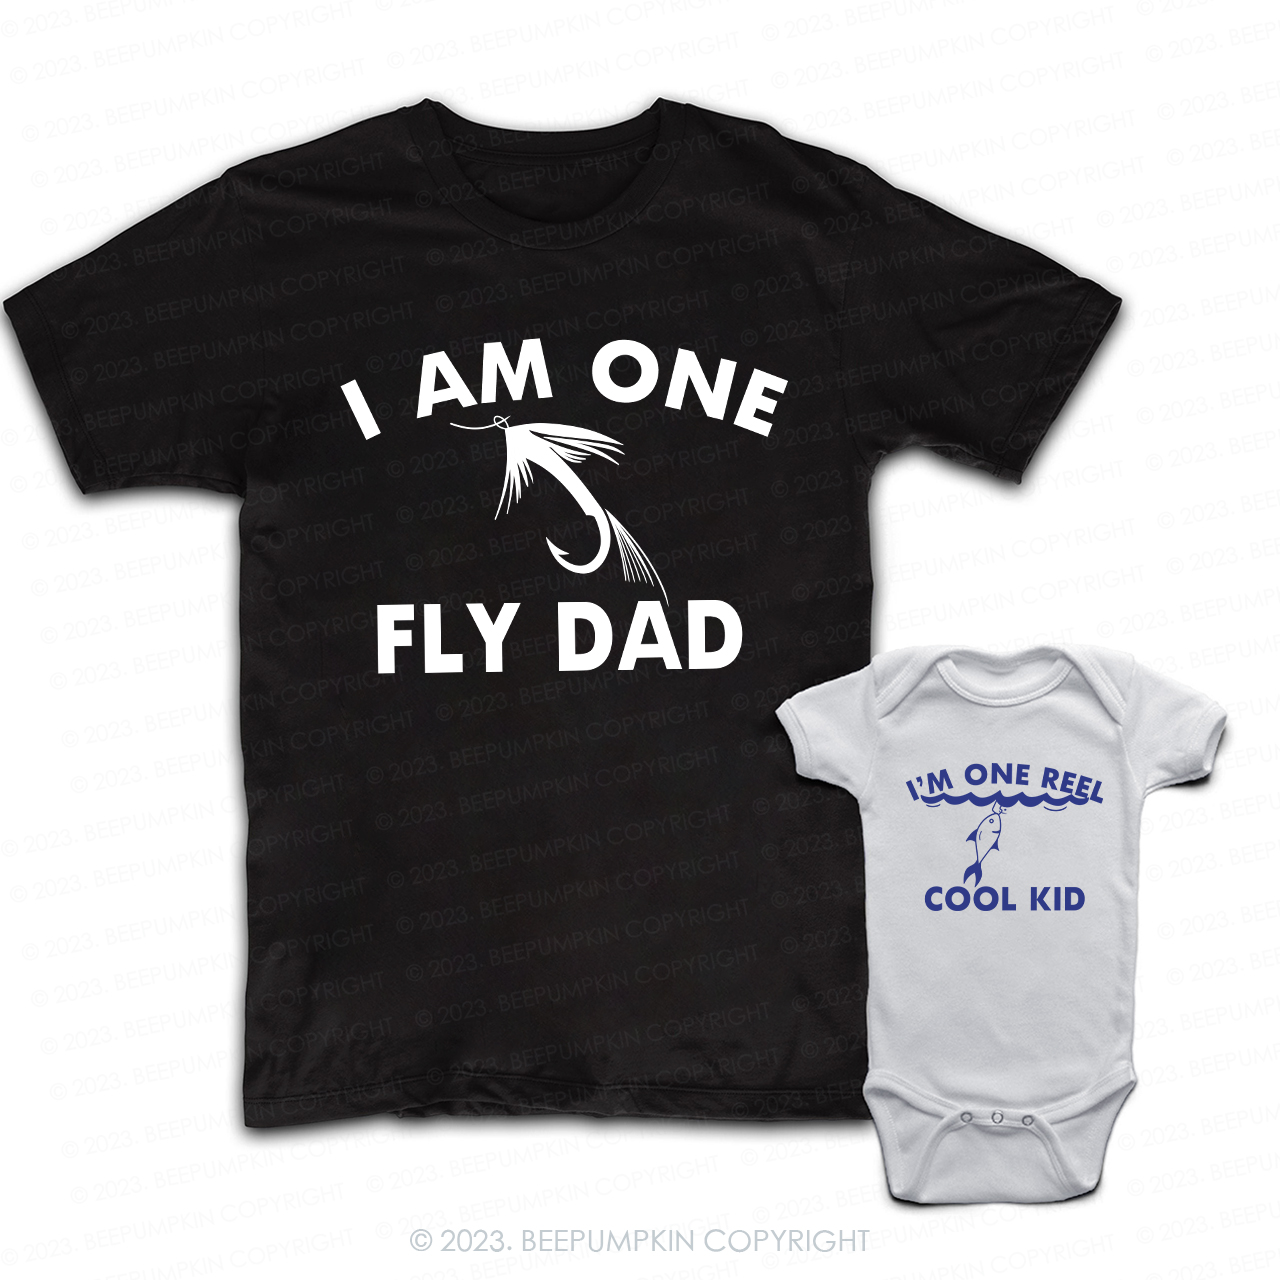 I'm One Fly Dad And I'm One Reel Cool Kid Dad & Me Matching T-Shirts 